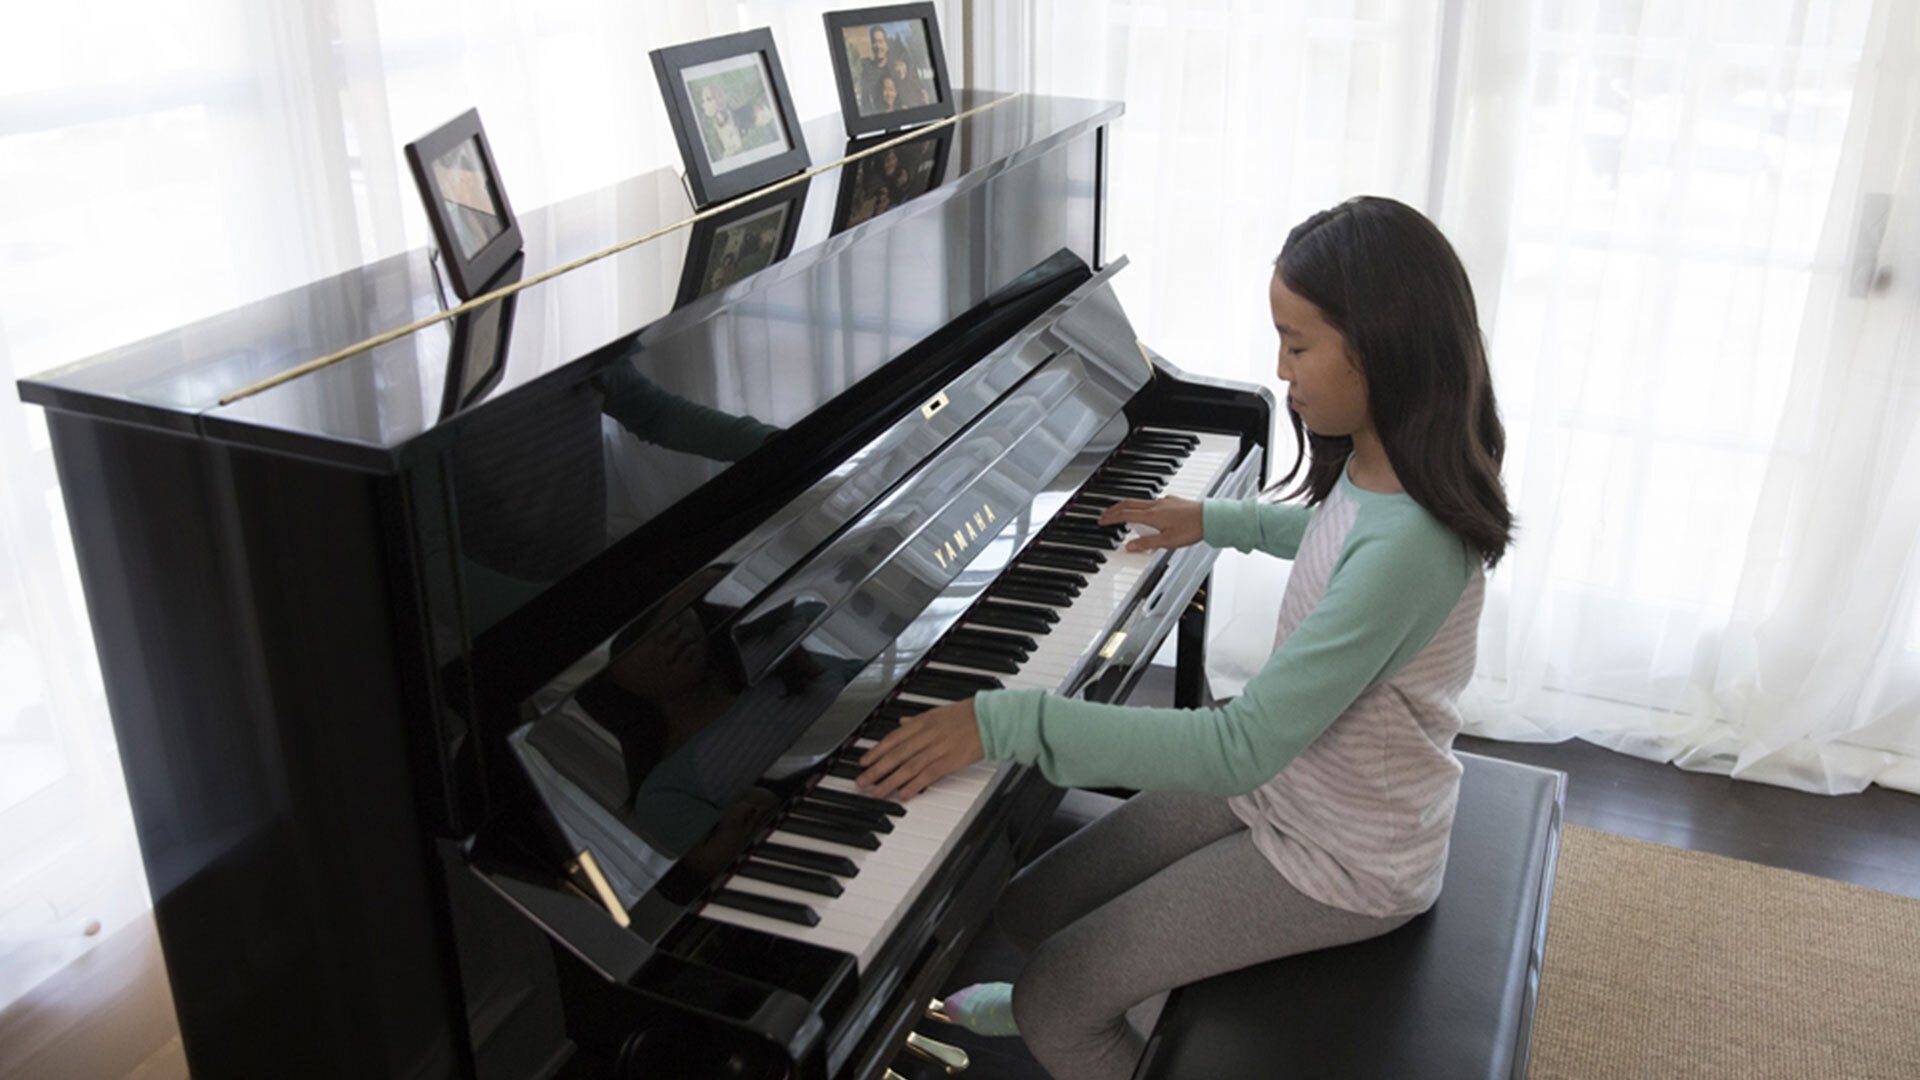 Yamaha U1 Upright Piano